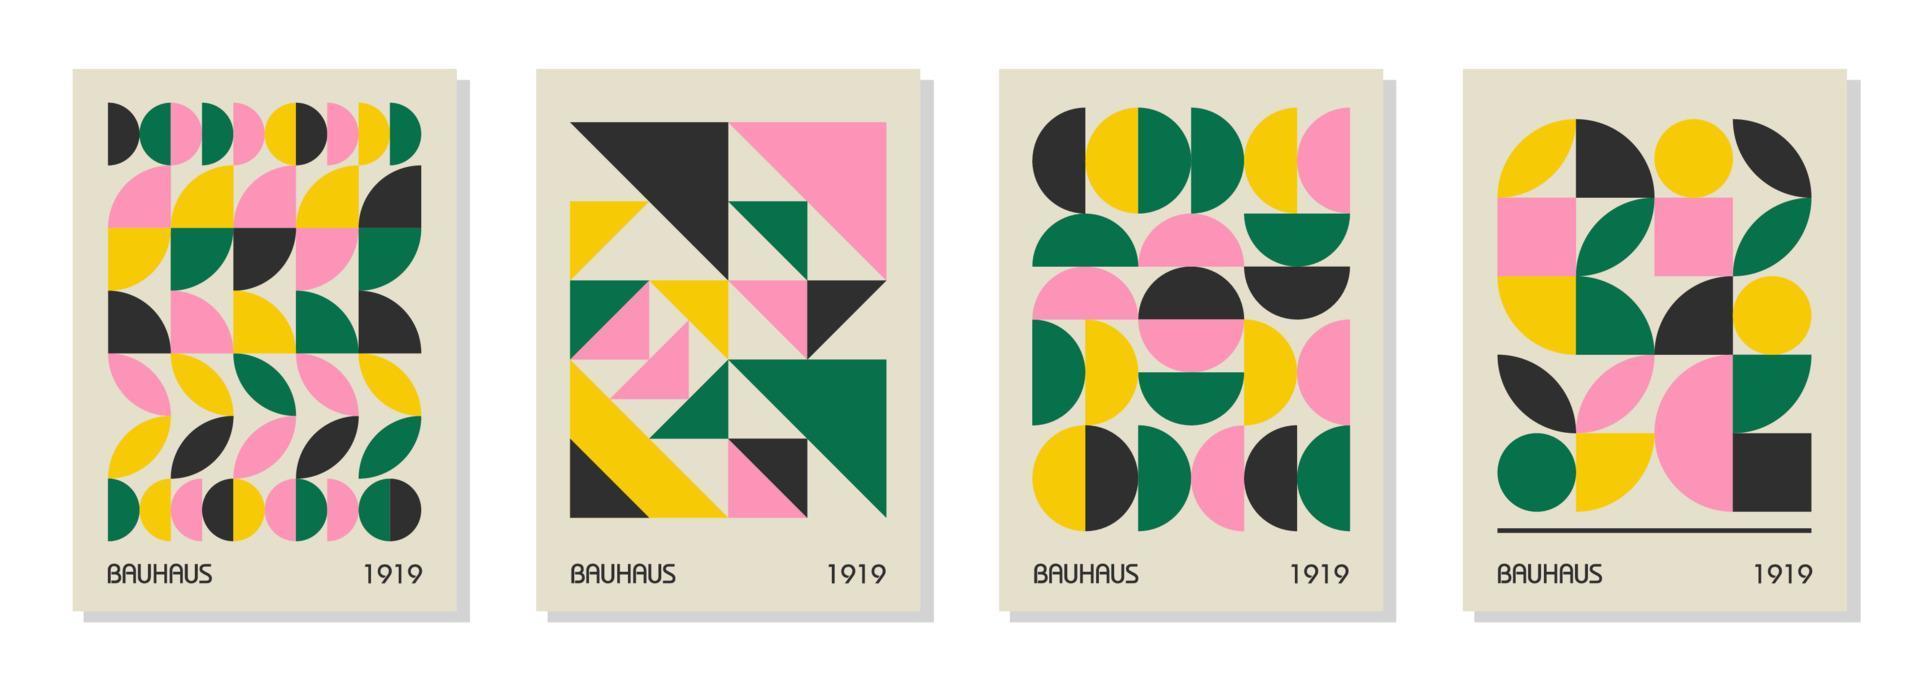 uppsättning av 4 minimal vintage 20-tal geometriska design affischer, väggkonst, mall, layout med primitiva former element. bauhaus retro mönster bakgrund, vektor abstrakt cirkel, triangel och kvadratisk linjekonst